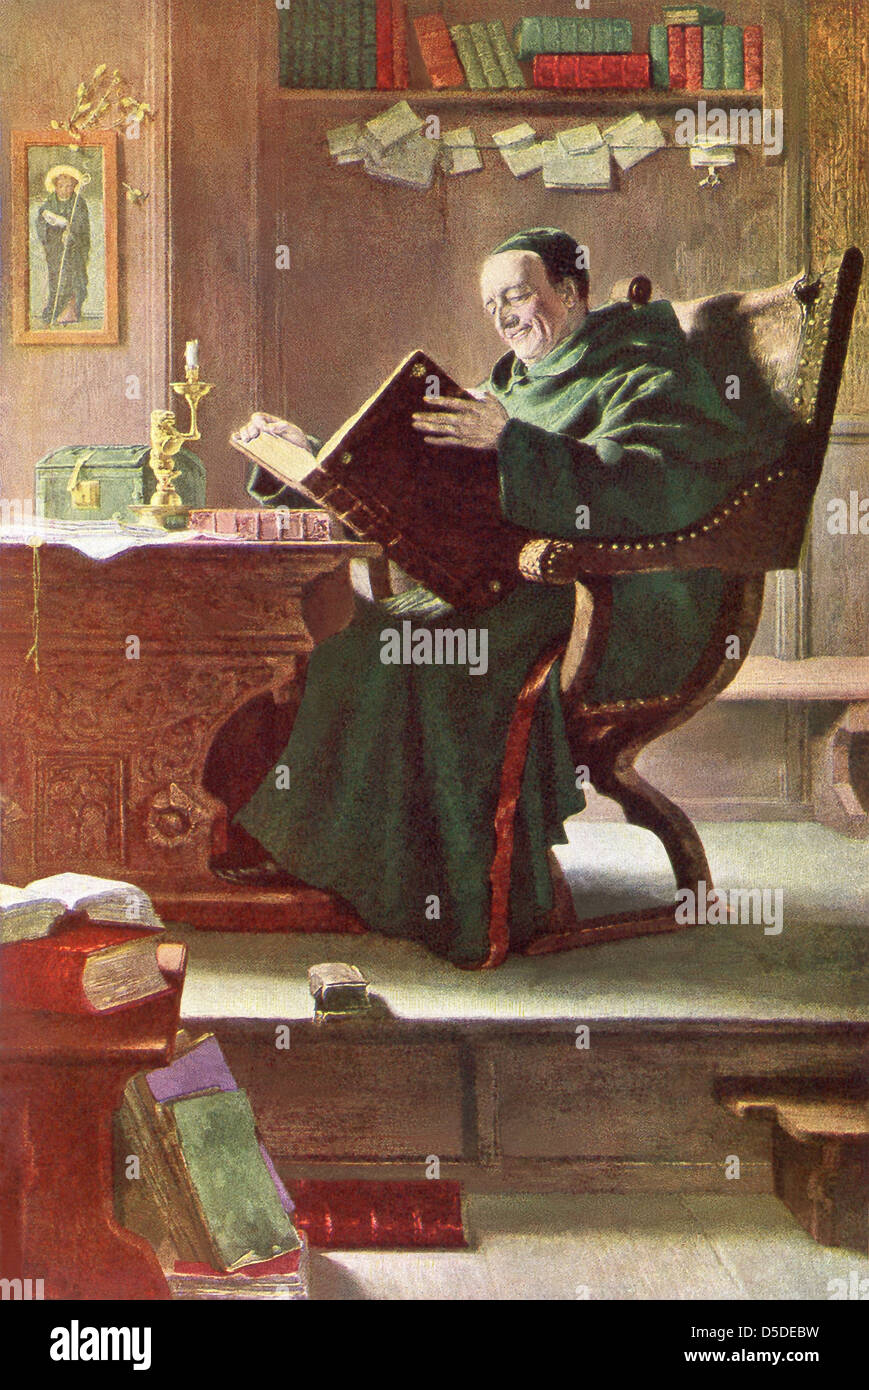 Ein christlicher Mönch zeigt eine alte Buch in dieser Abbildung, die bis 1917 stammt. Stockfoto